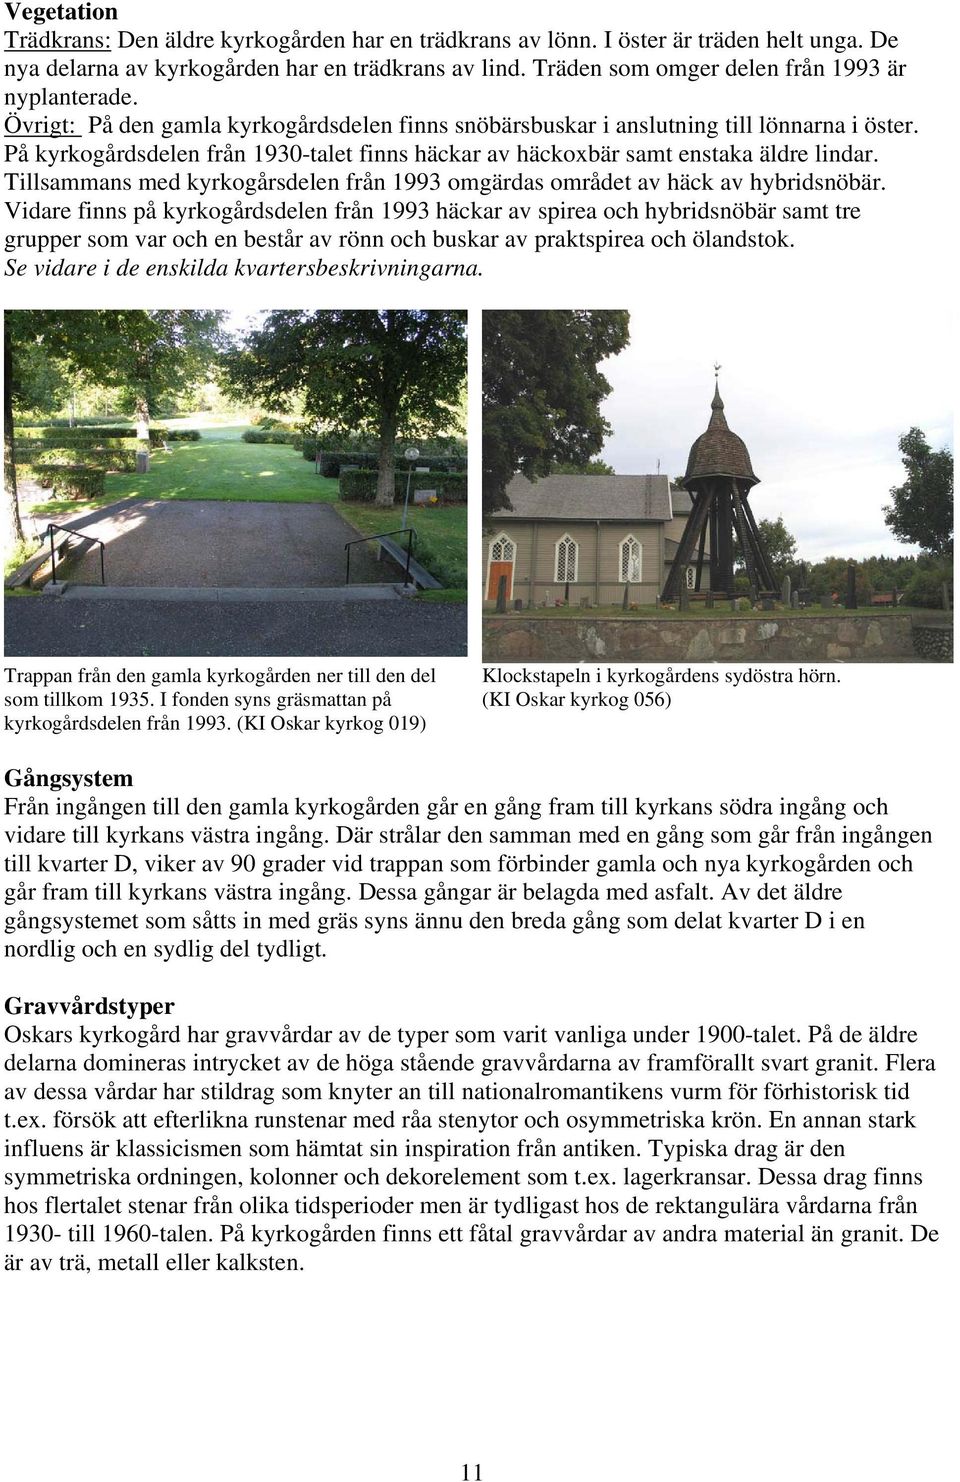 På kyrkogårdsdelen från 1930-talet finns häckar av häckoxbär samt enstaka äldre lindar. Tillsammans med kyrkogårsdelen från 1993 omgärdas området av häck av hybridsnöbär.